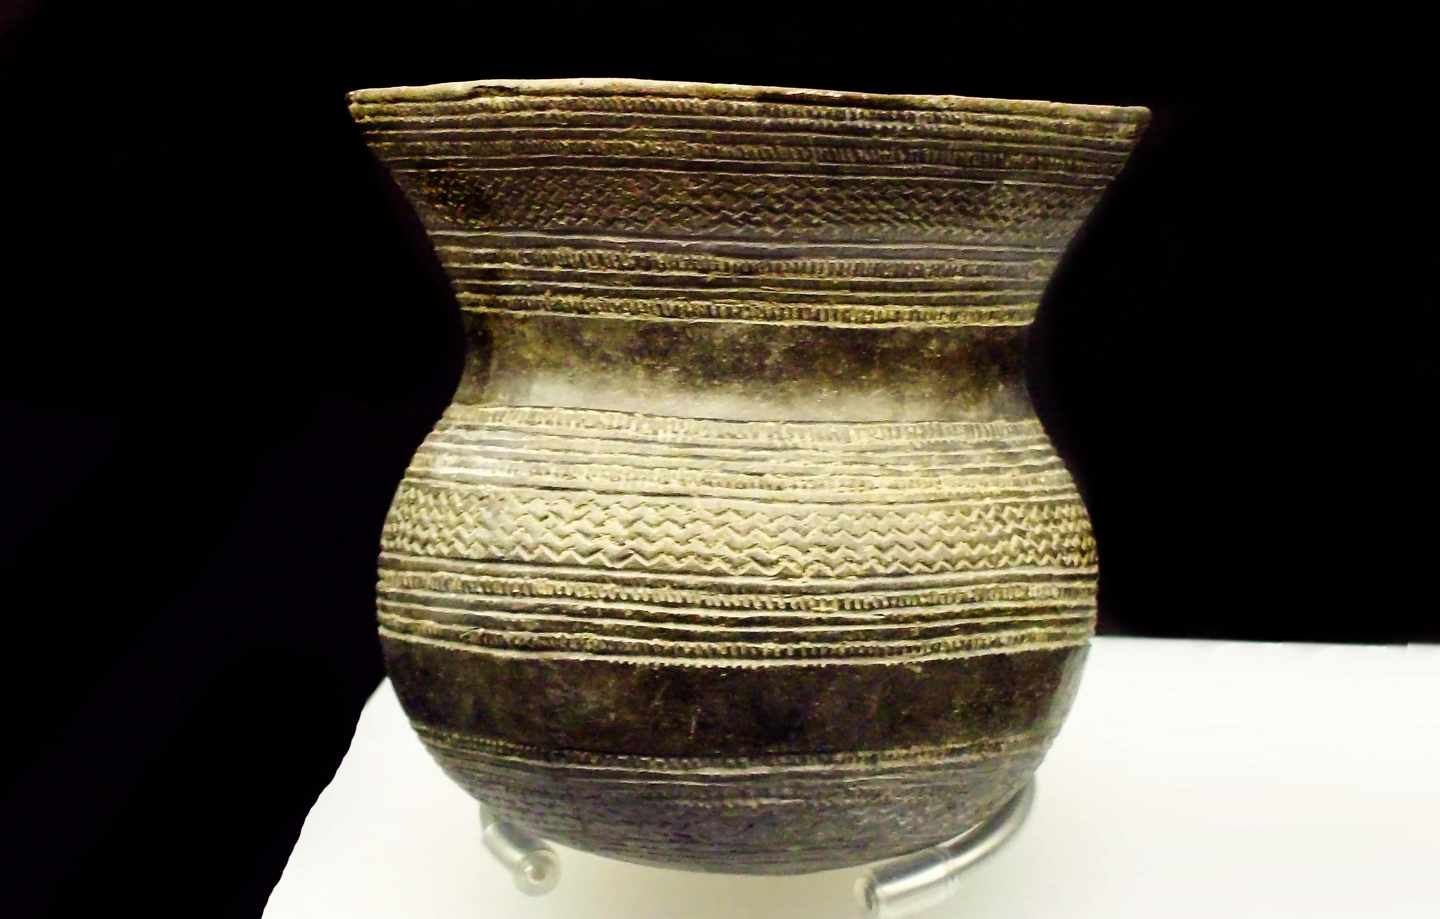 Vaso campaneiforme en el Museo Arqueológico Nacional.